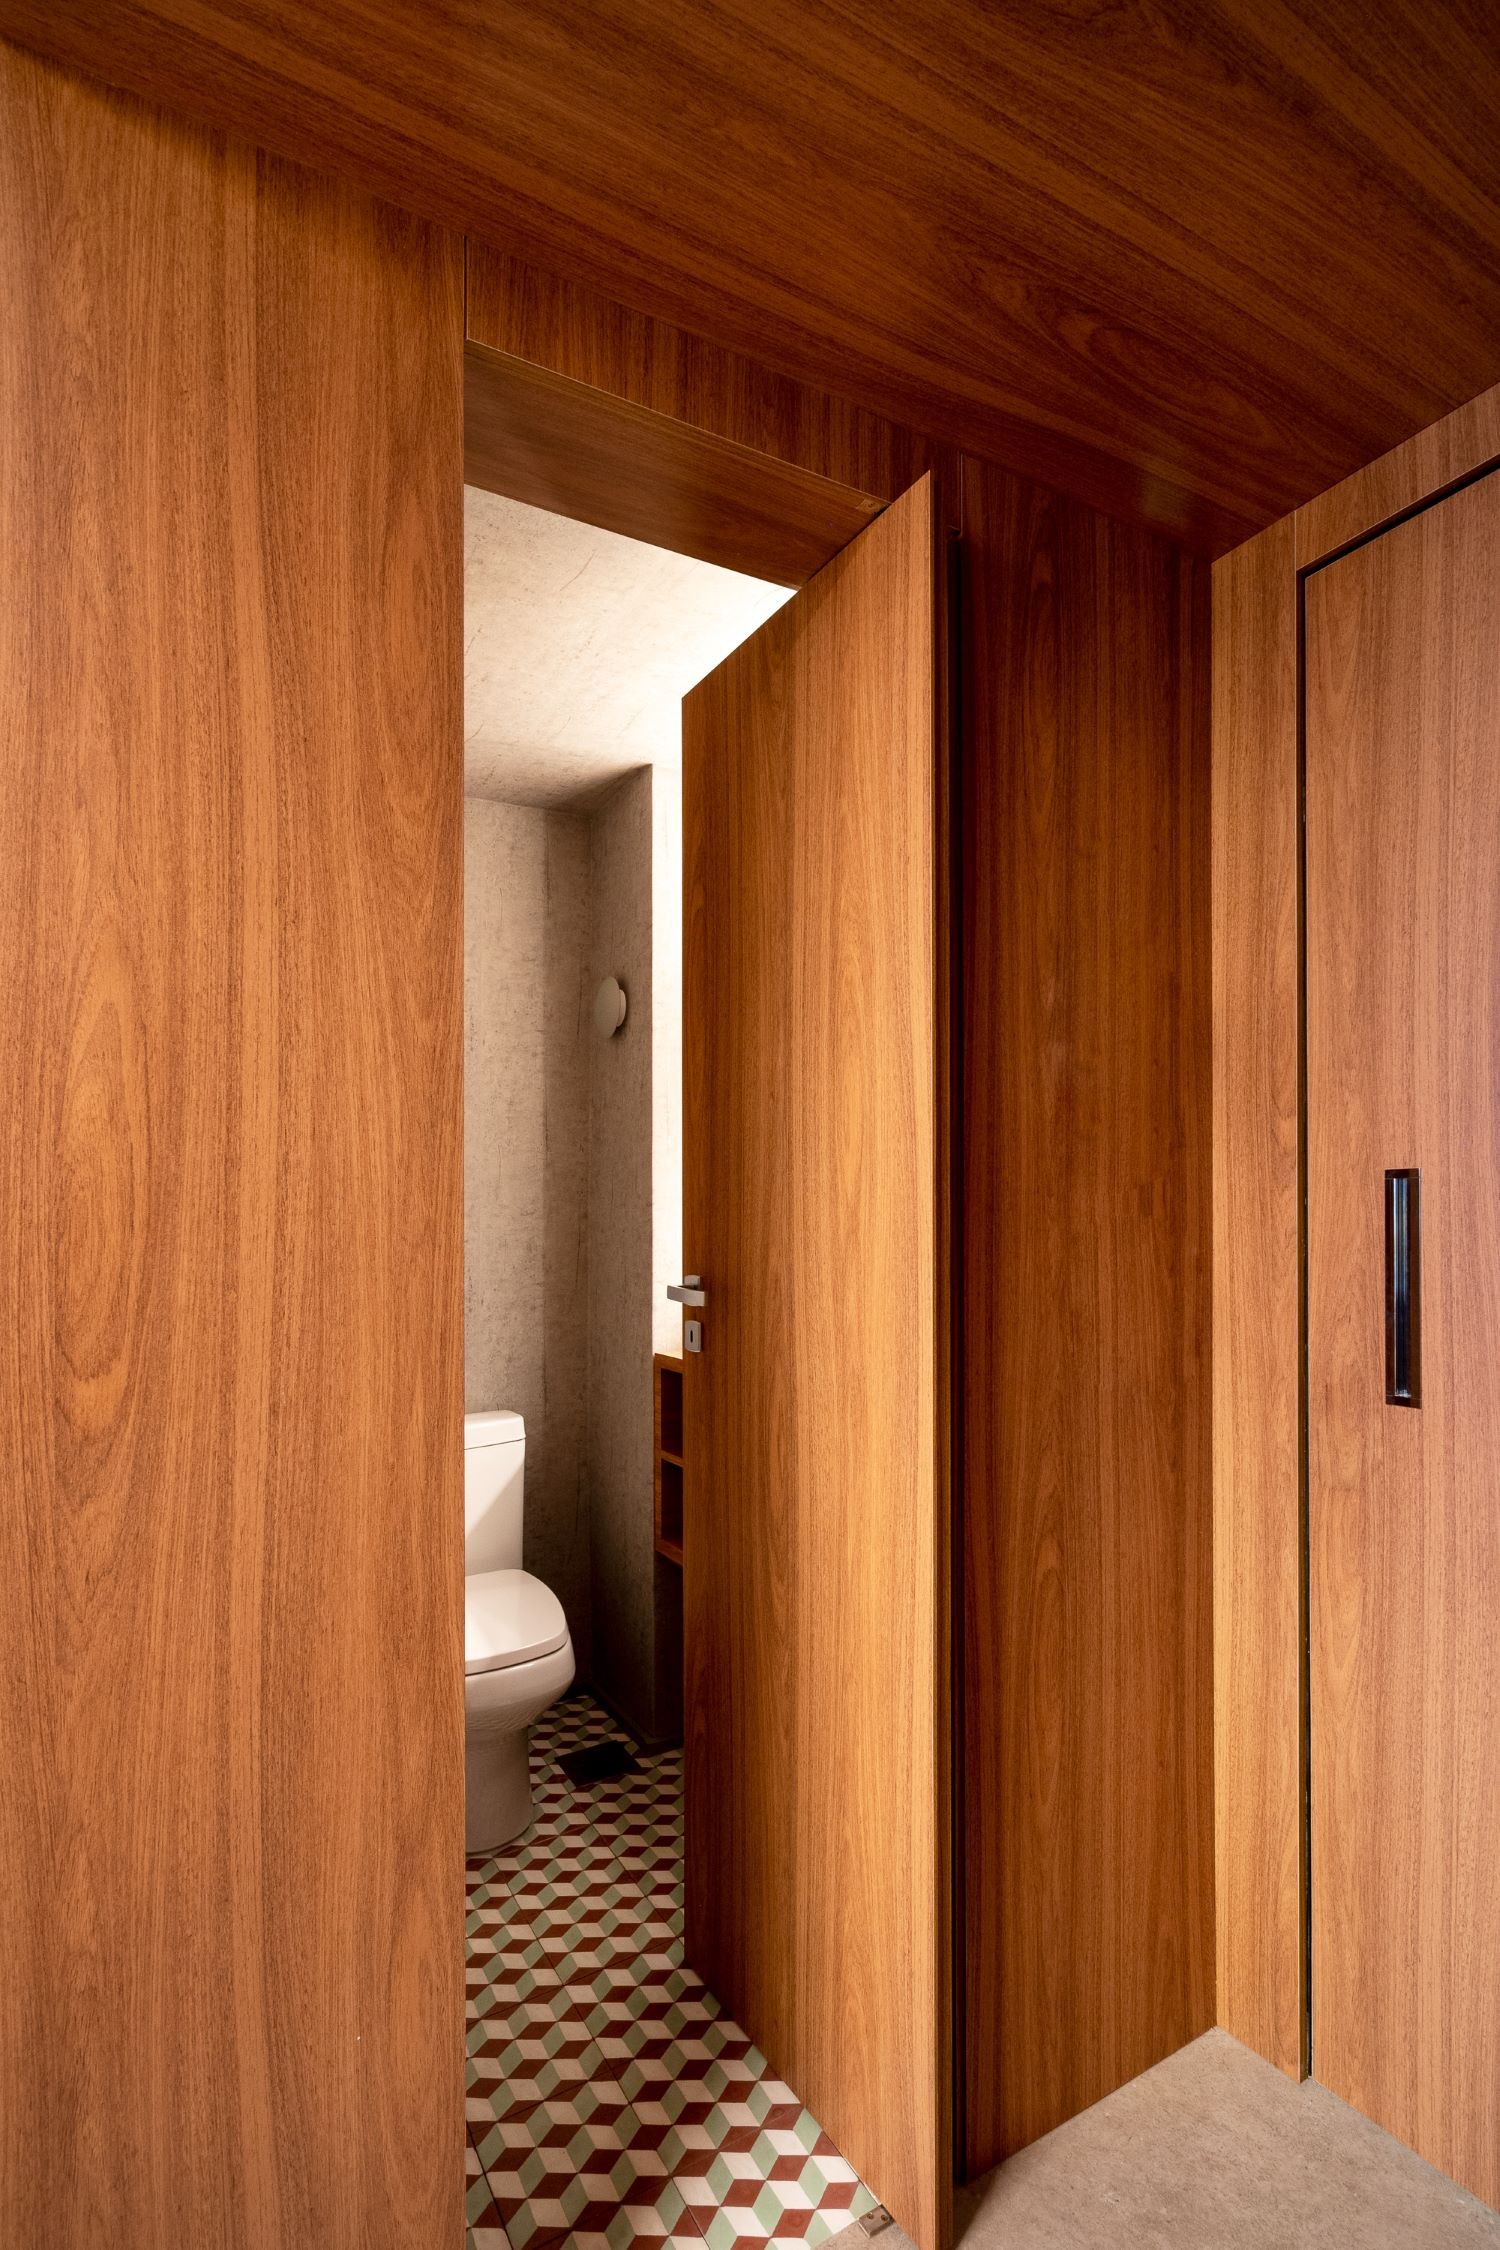 BANHEIRO | A porta do banheiro, toda em madeira, permite 